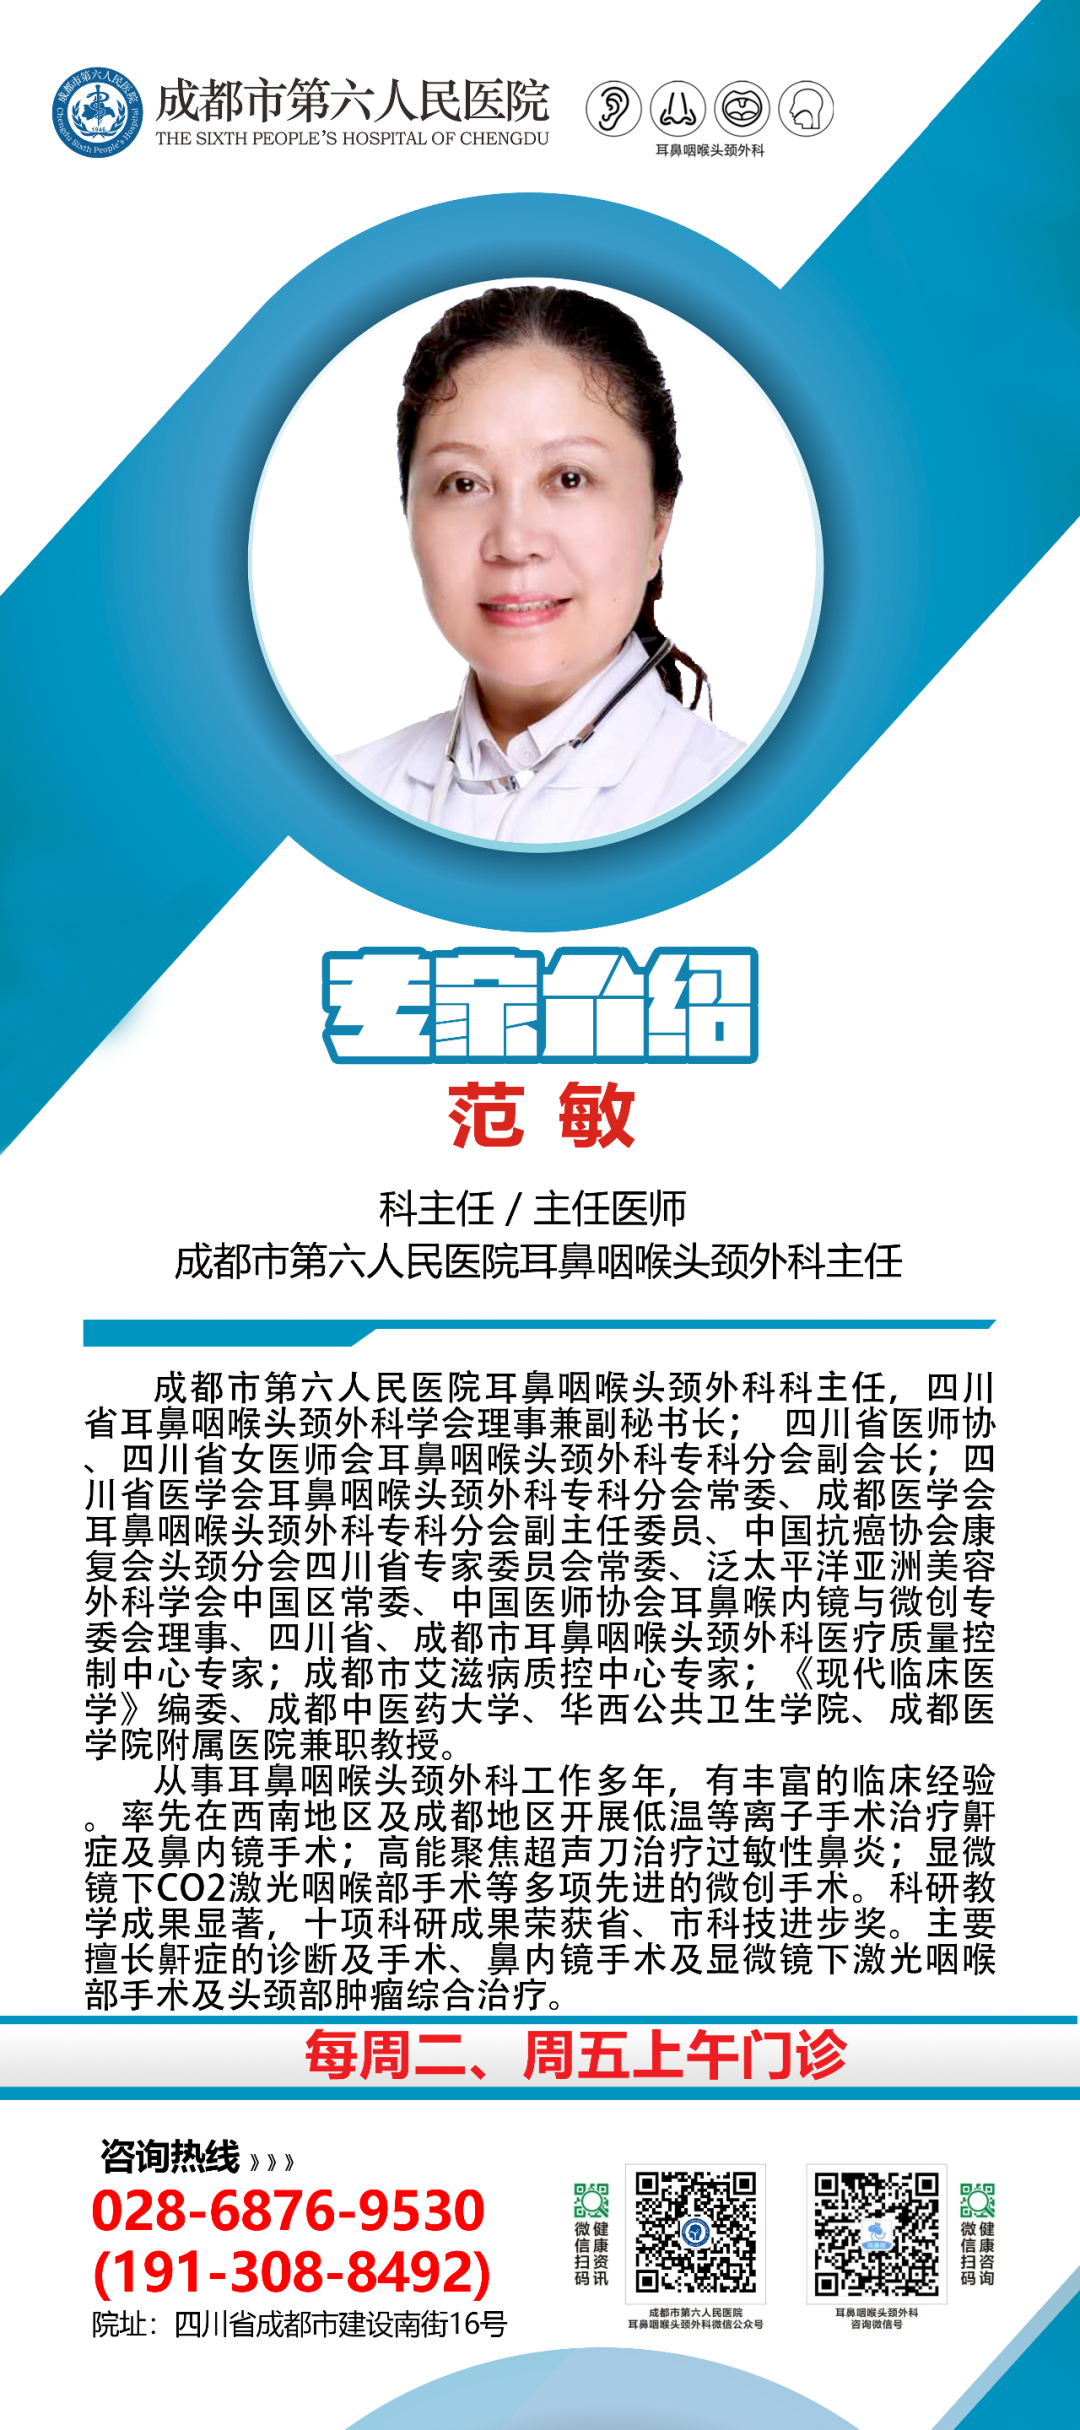 耳鼻喉科门诊常用检查器械_上海鼻喉科医院最好_上海眼鼻喉科医院官网